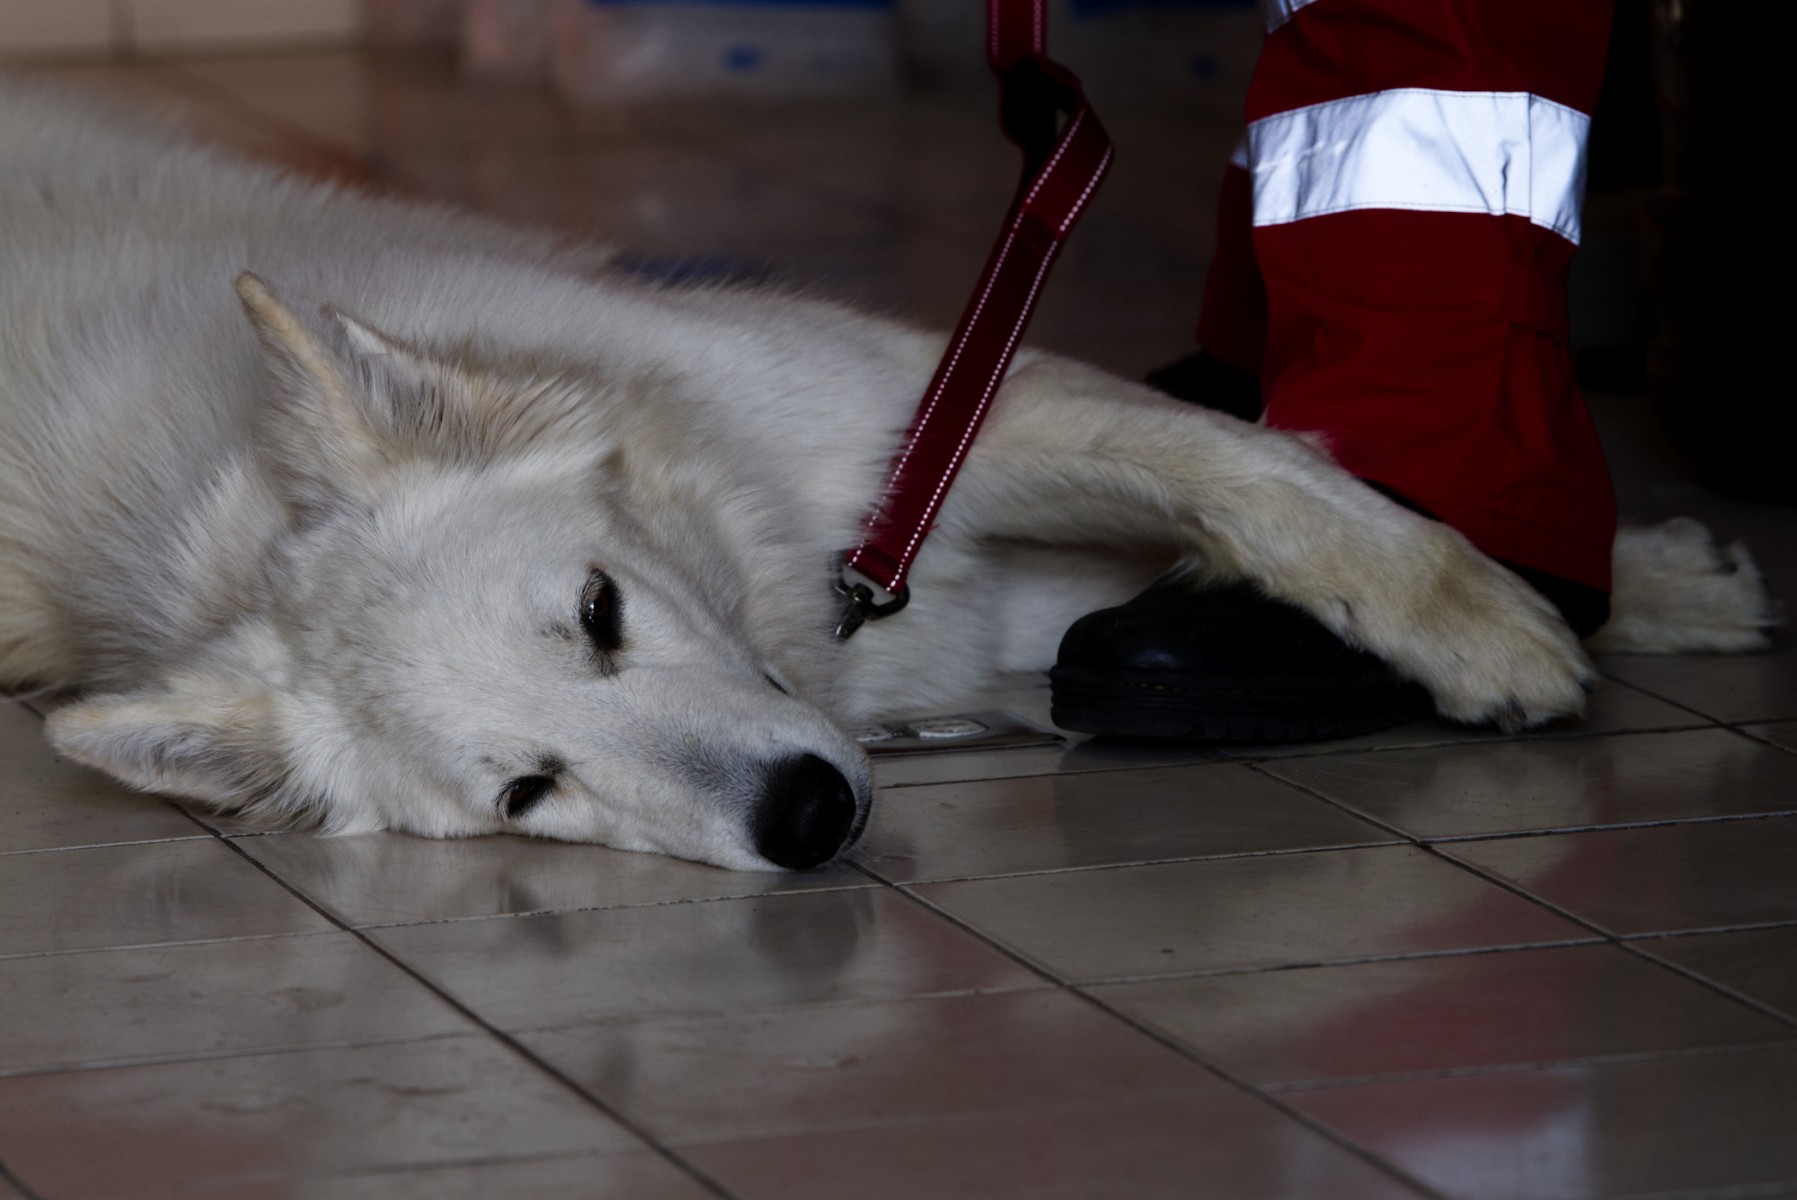 Estoicos, perros mexicanos se entrenan para salvar vidas en todo el mundo